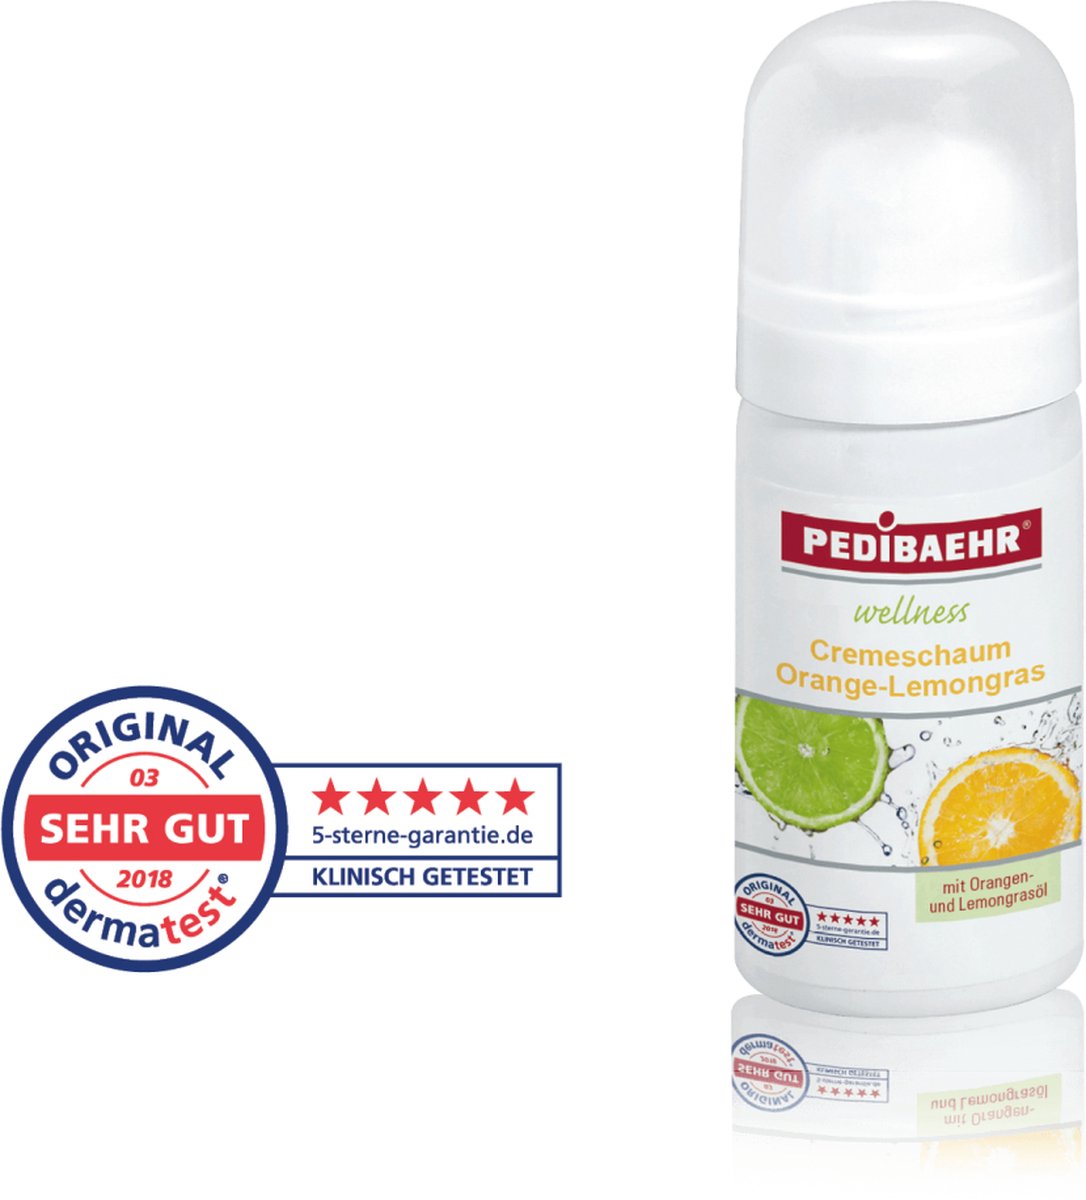 PEDIBAEHR - Crèmeschuim - Orange-Lemongrass - 10009 - 35ml - Wellness - Vegan -